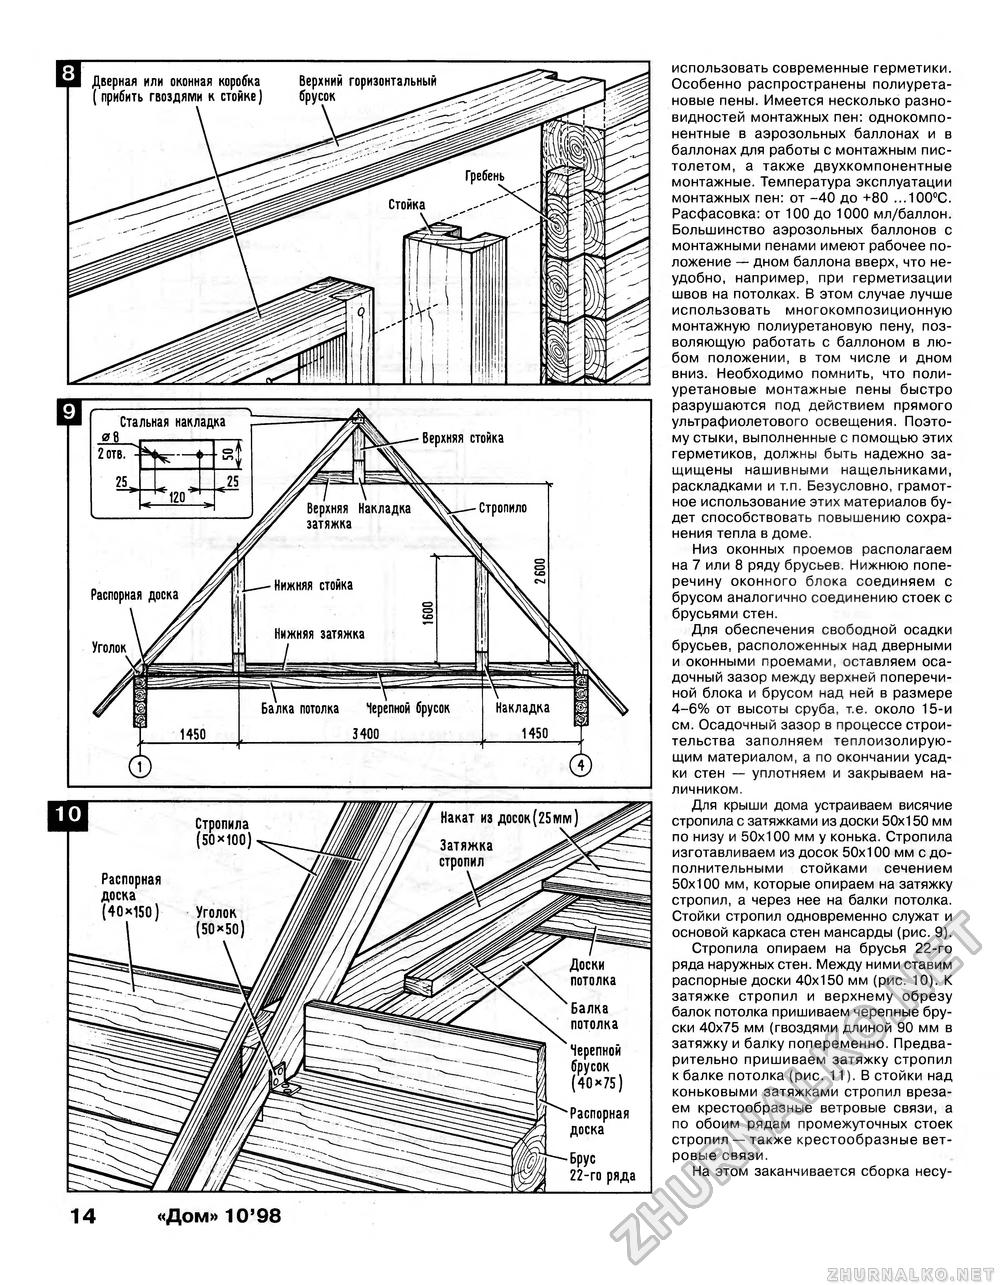 Дом 1998-10, страница 14